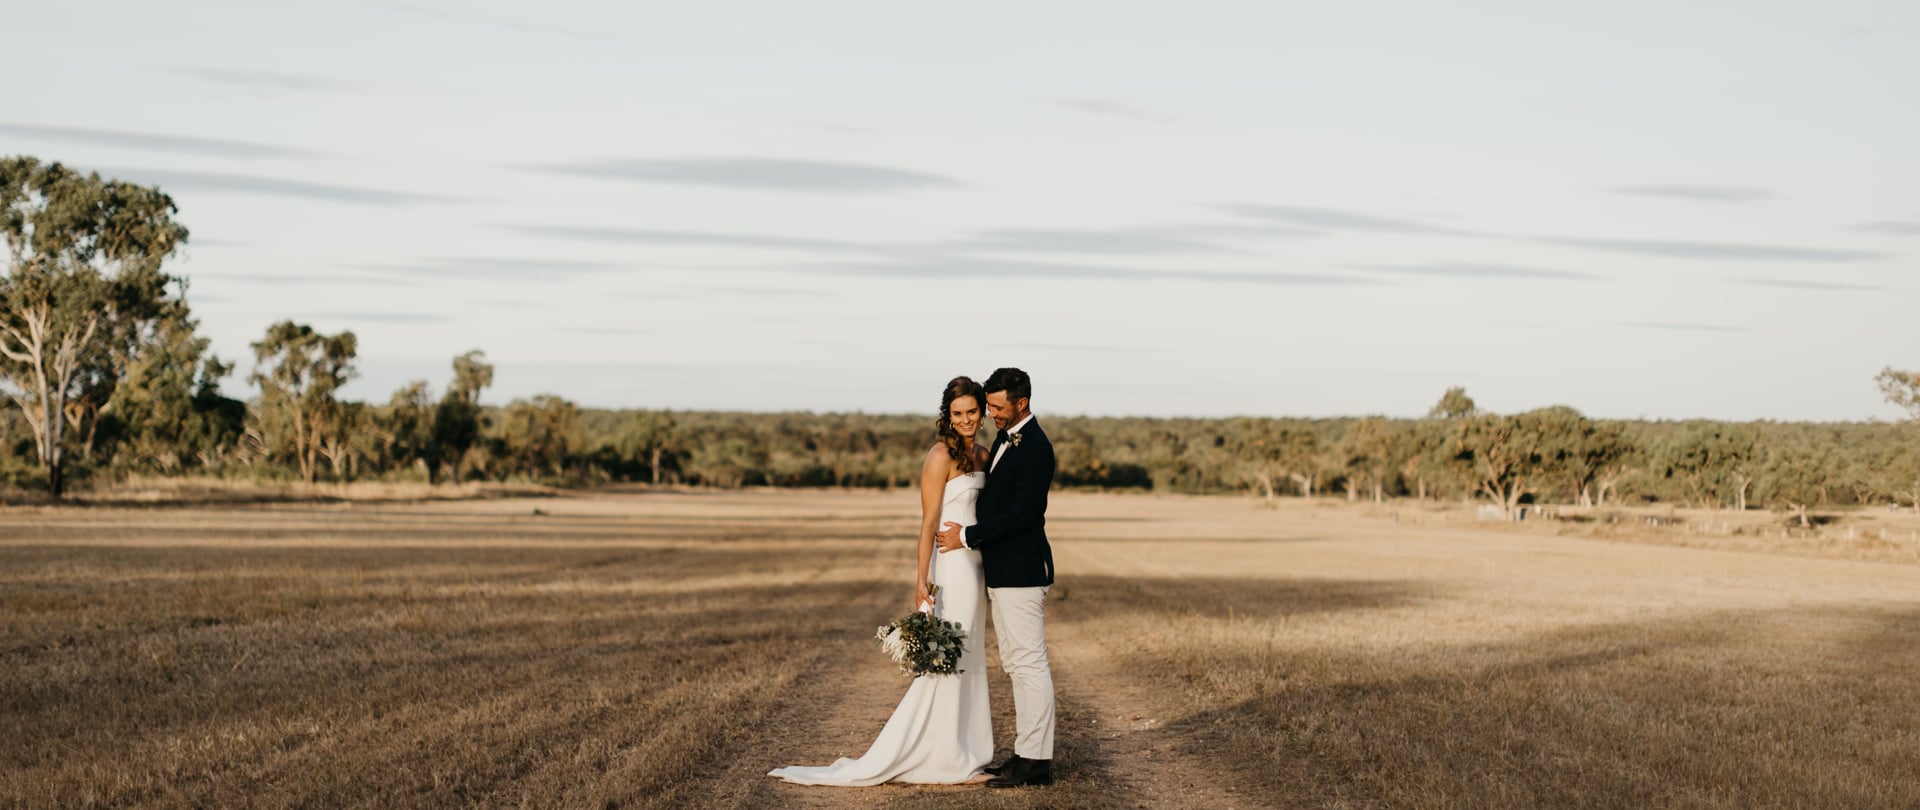 Ben & Bindi-Lee Wedding Video Filmed atQueensland,Australia